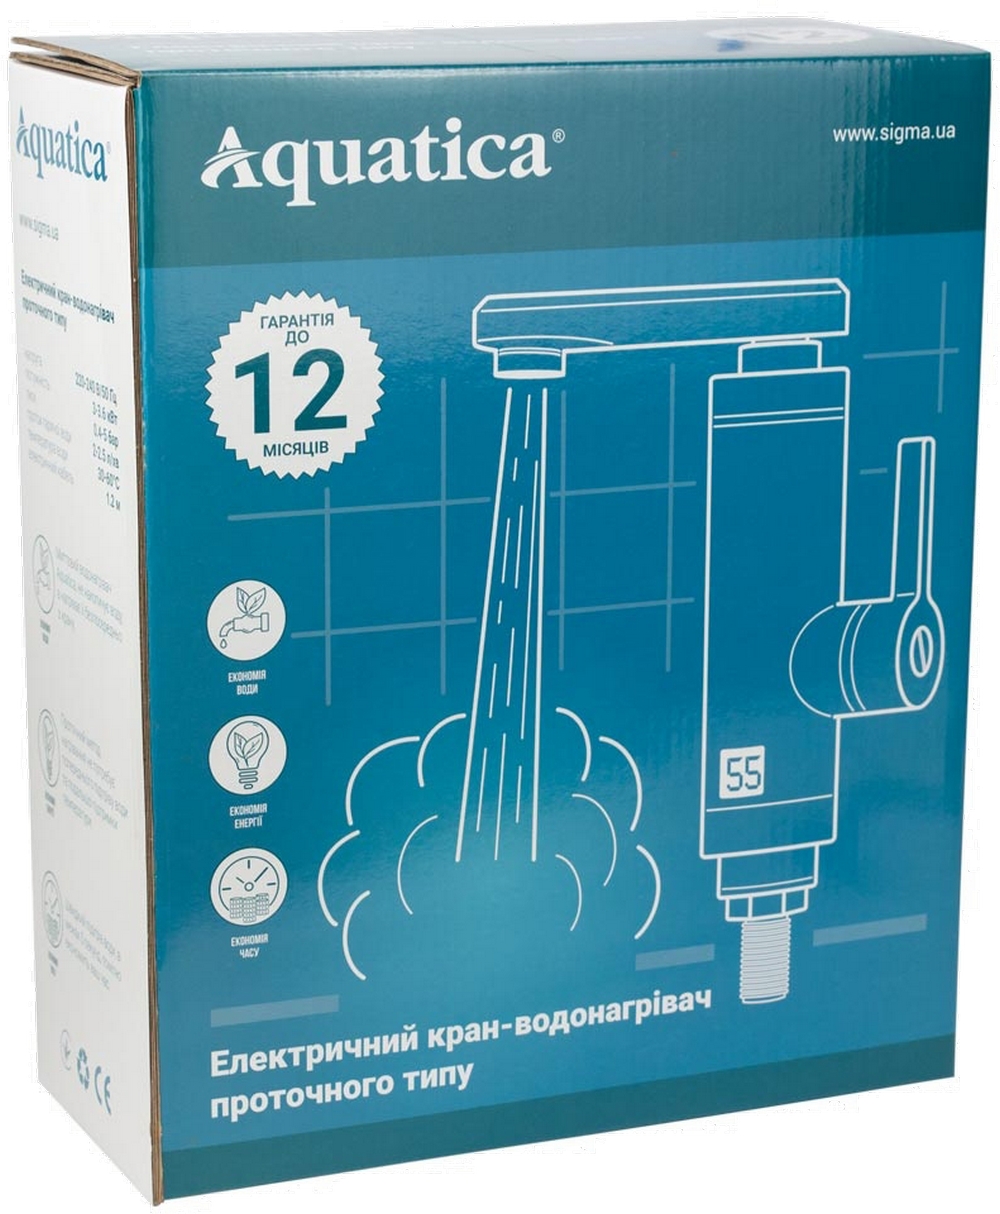 Проточный водонагреватель Aquatica JZ-6C141W цена 1513.00 грн - фотография 2